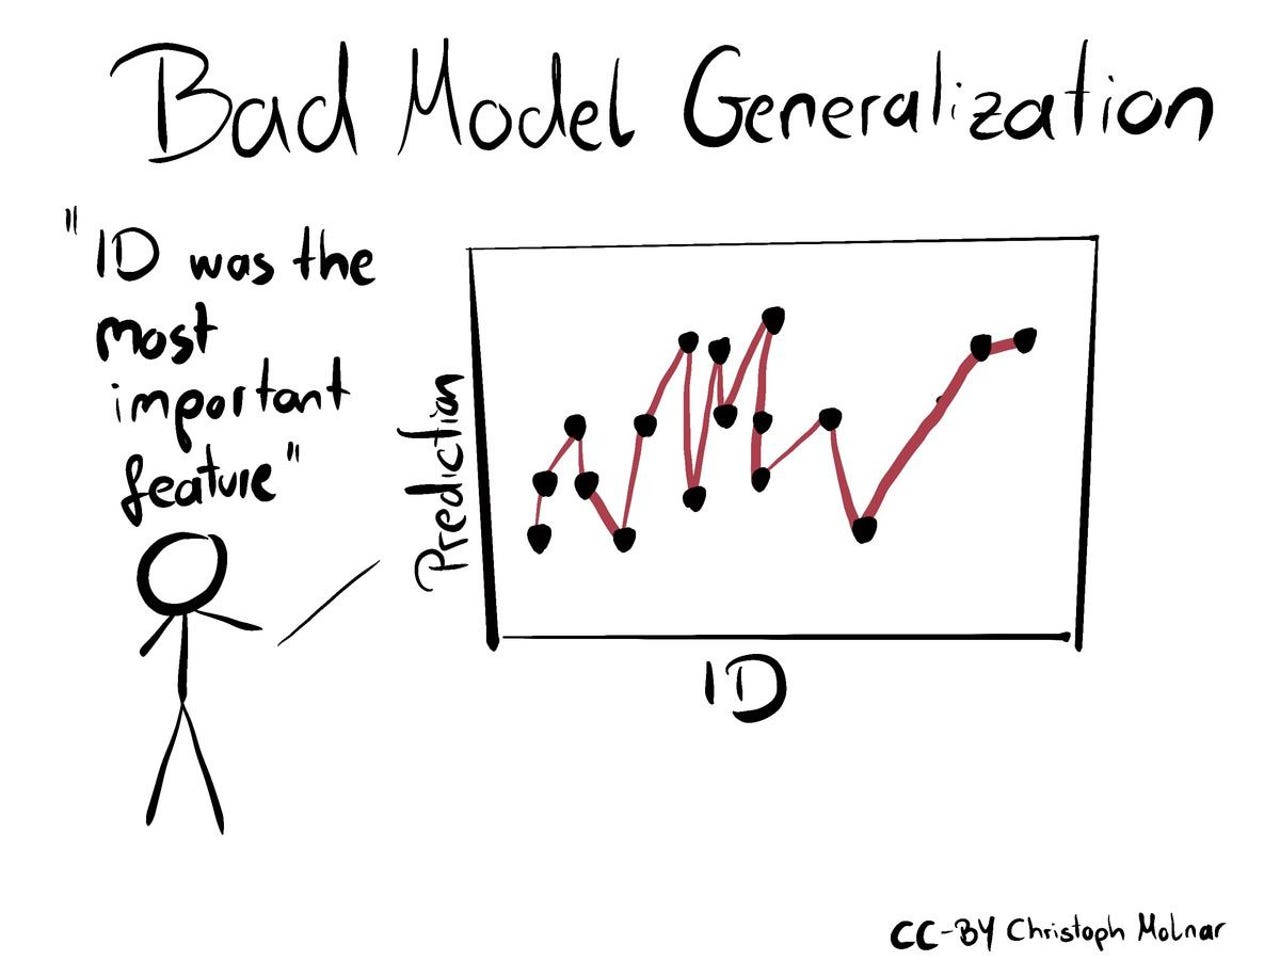 1-bad-model-generalization.jpg